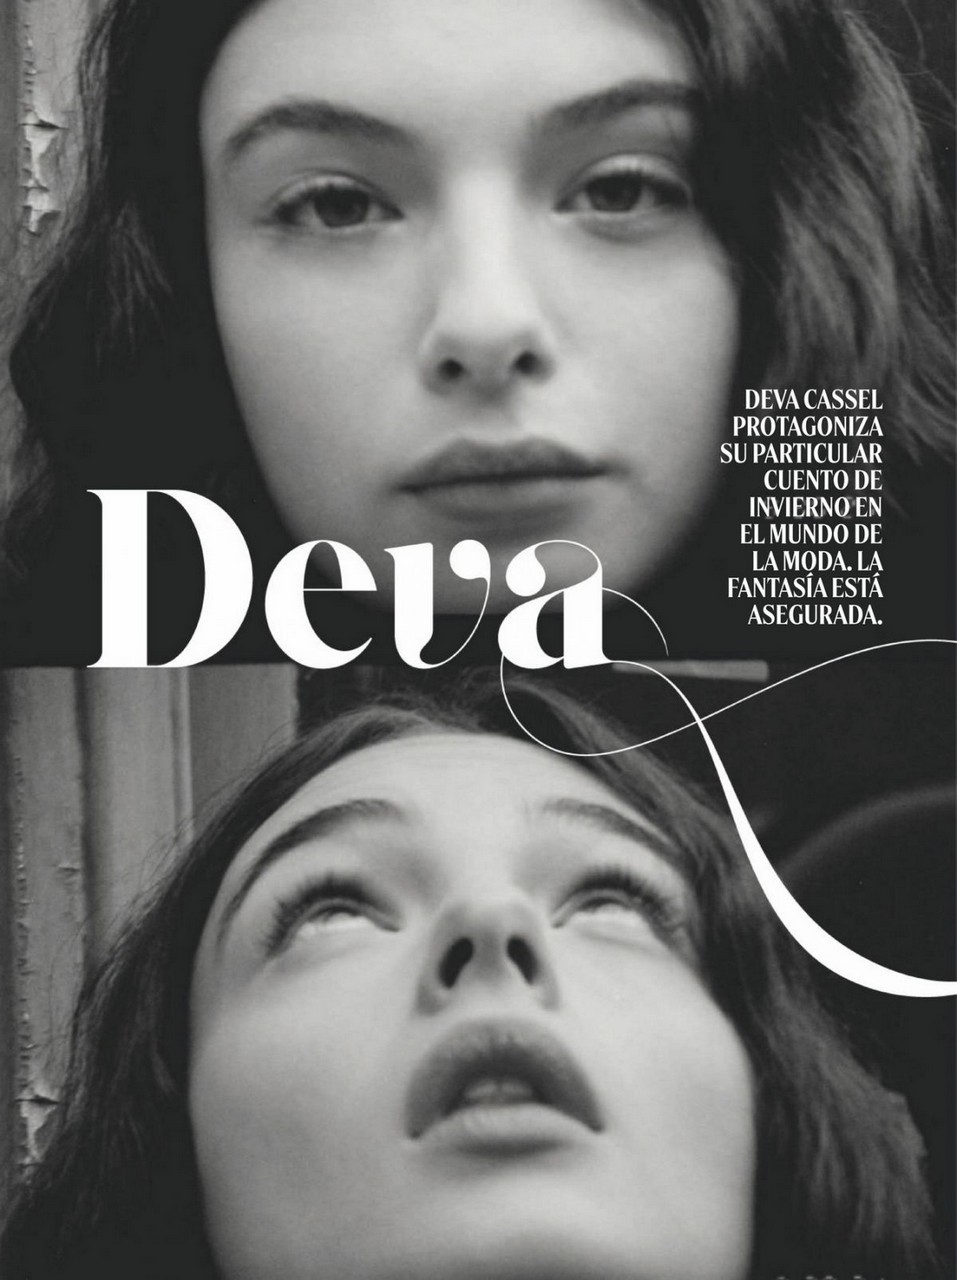 Deva Cassel Glamour Magazine Spain December 2021 January